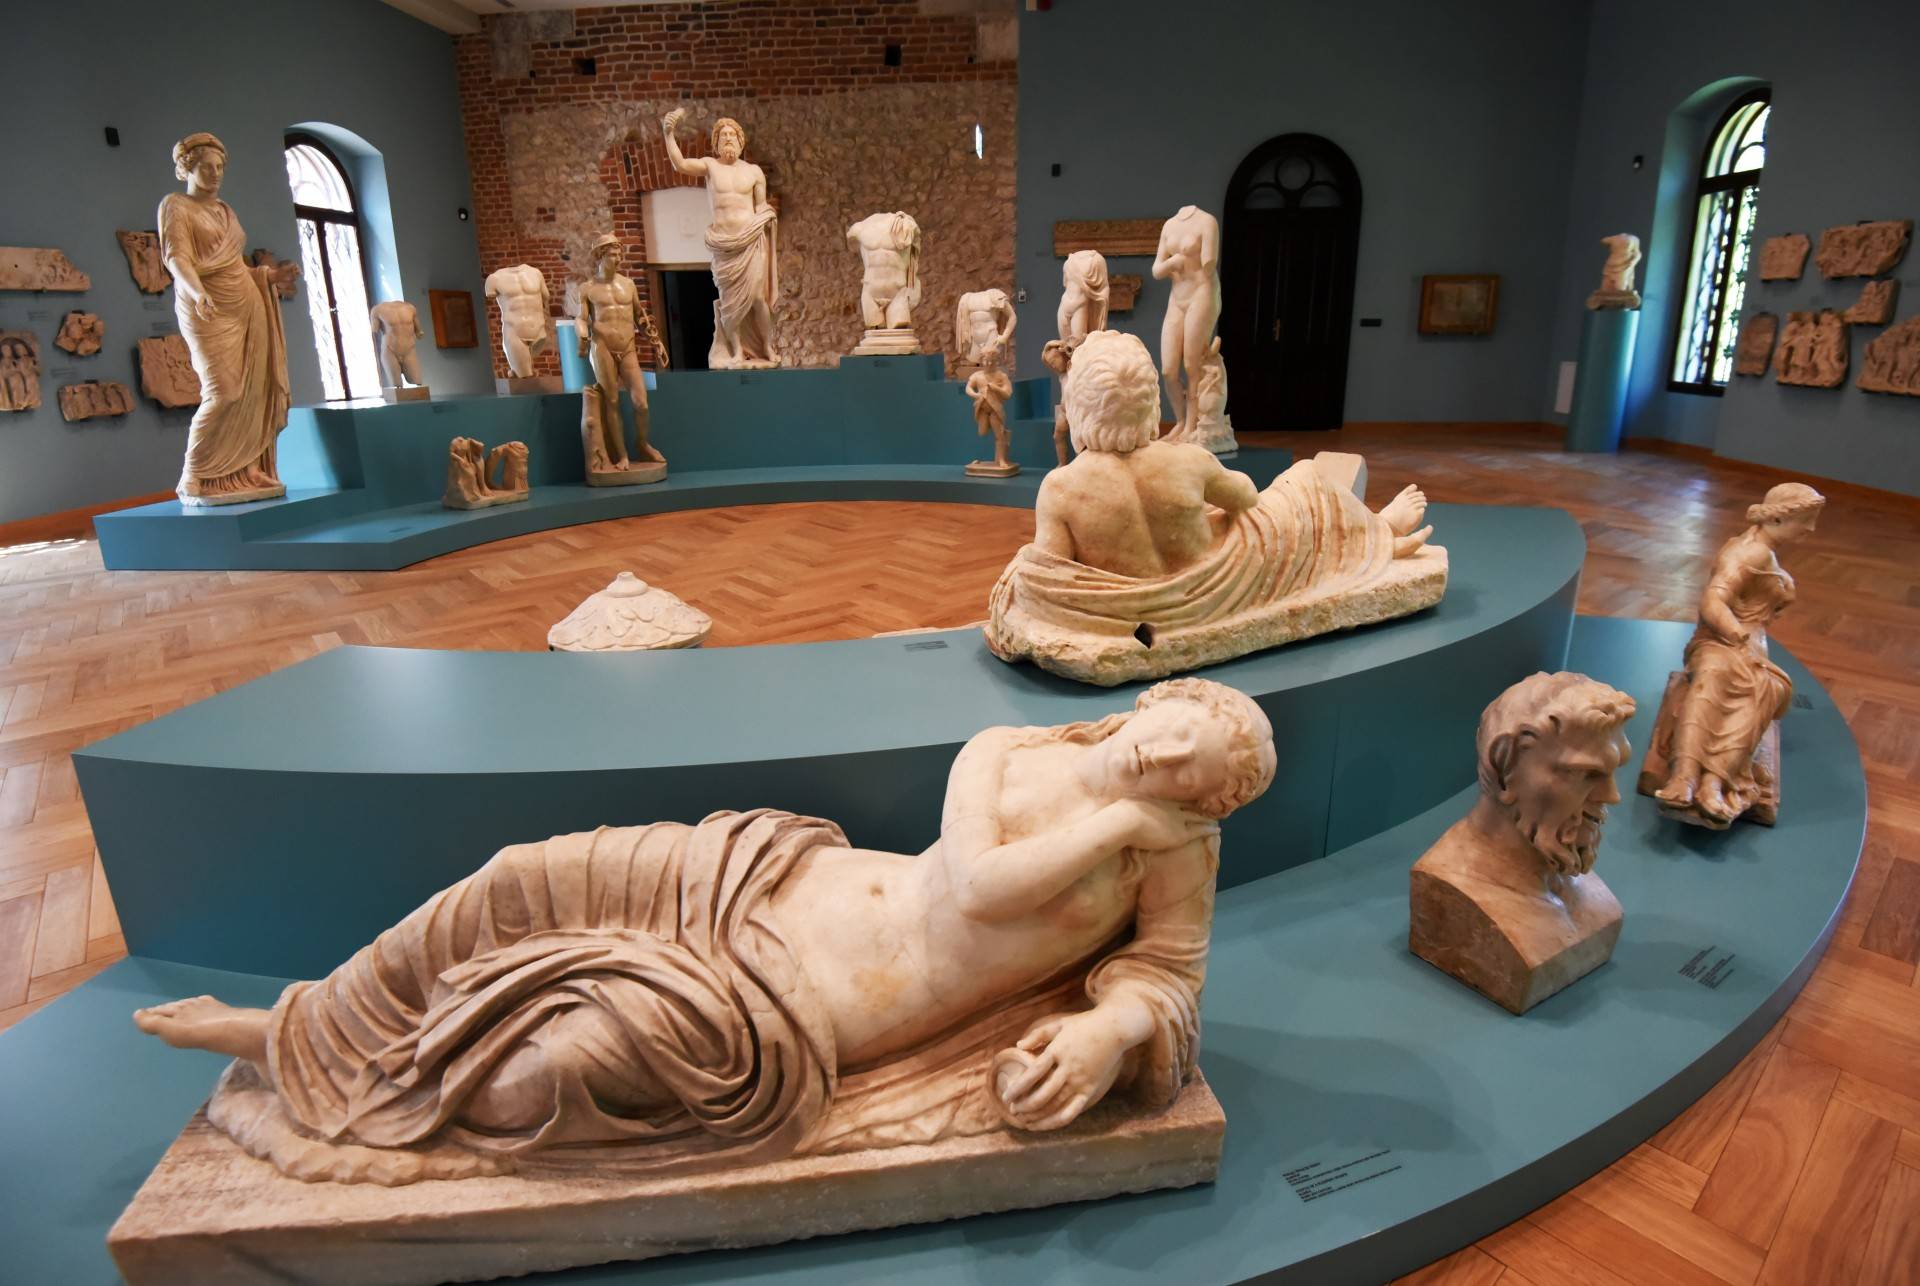 "Źródła": Galeria Sztuki Starożytnej w Arsenale